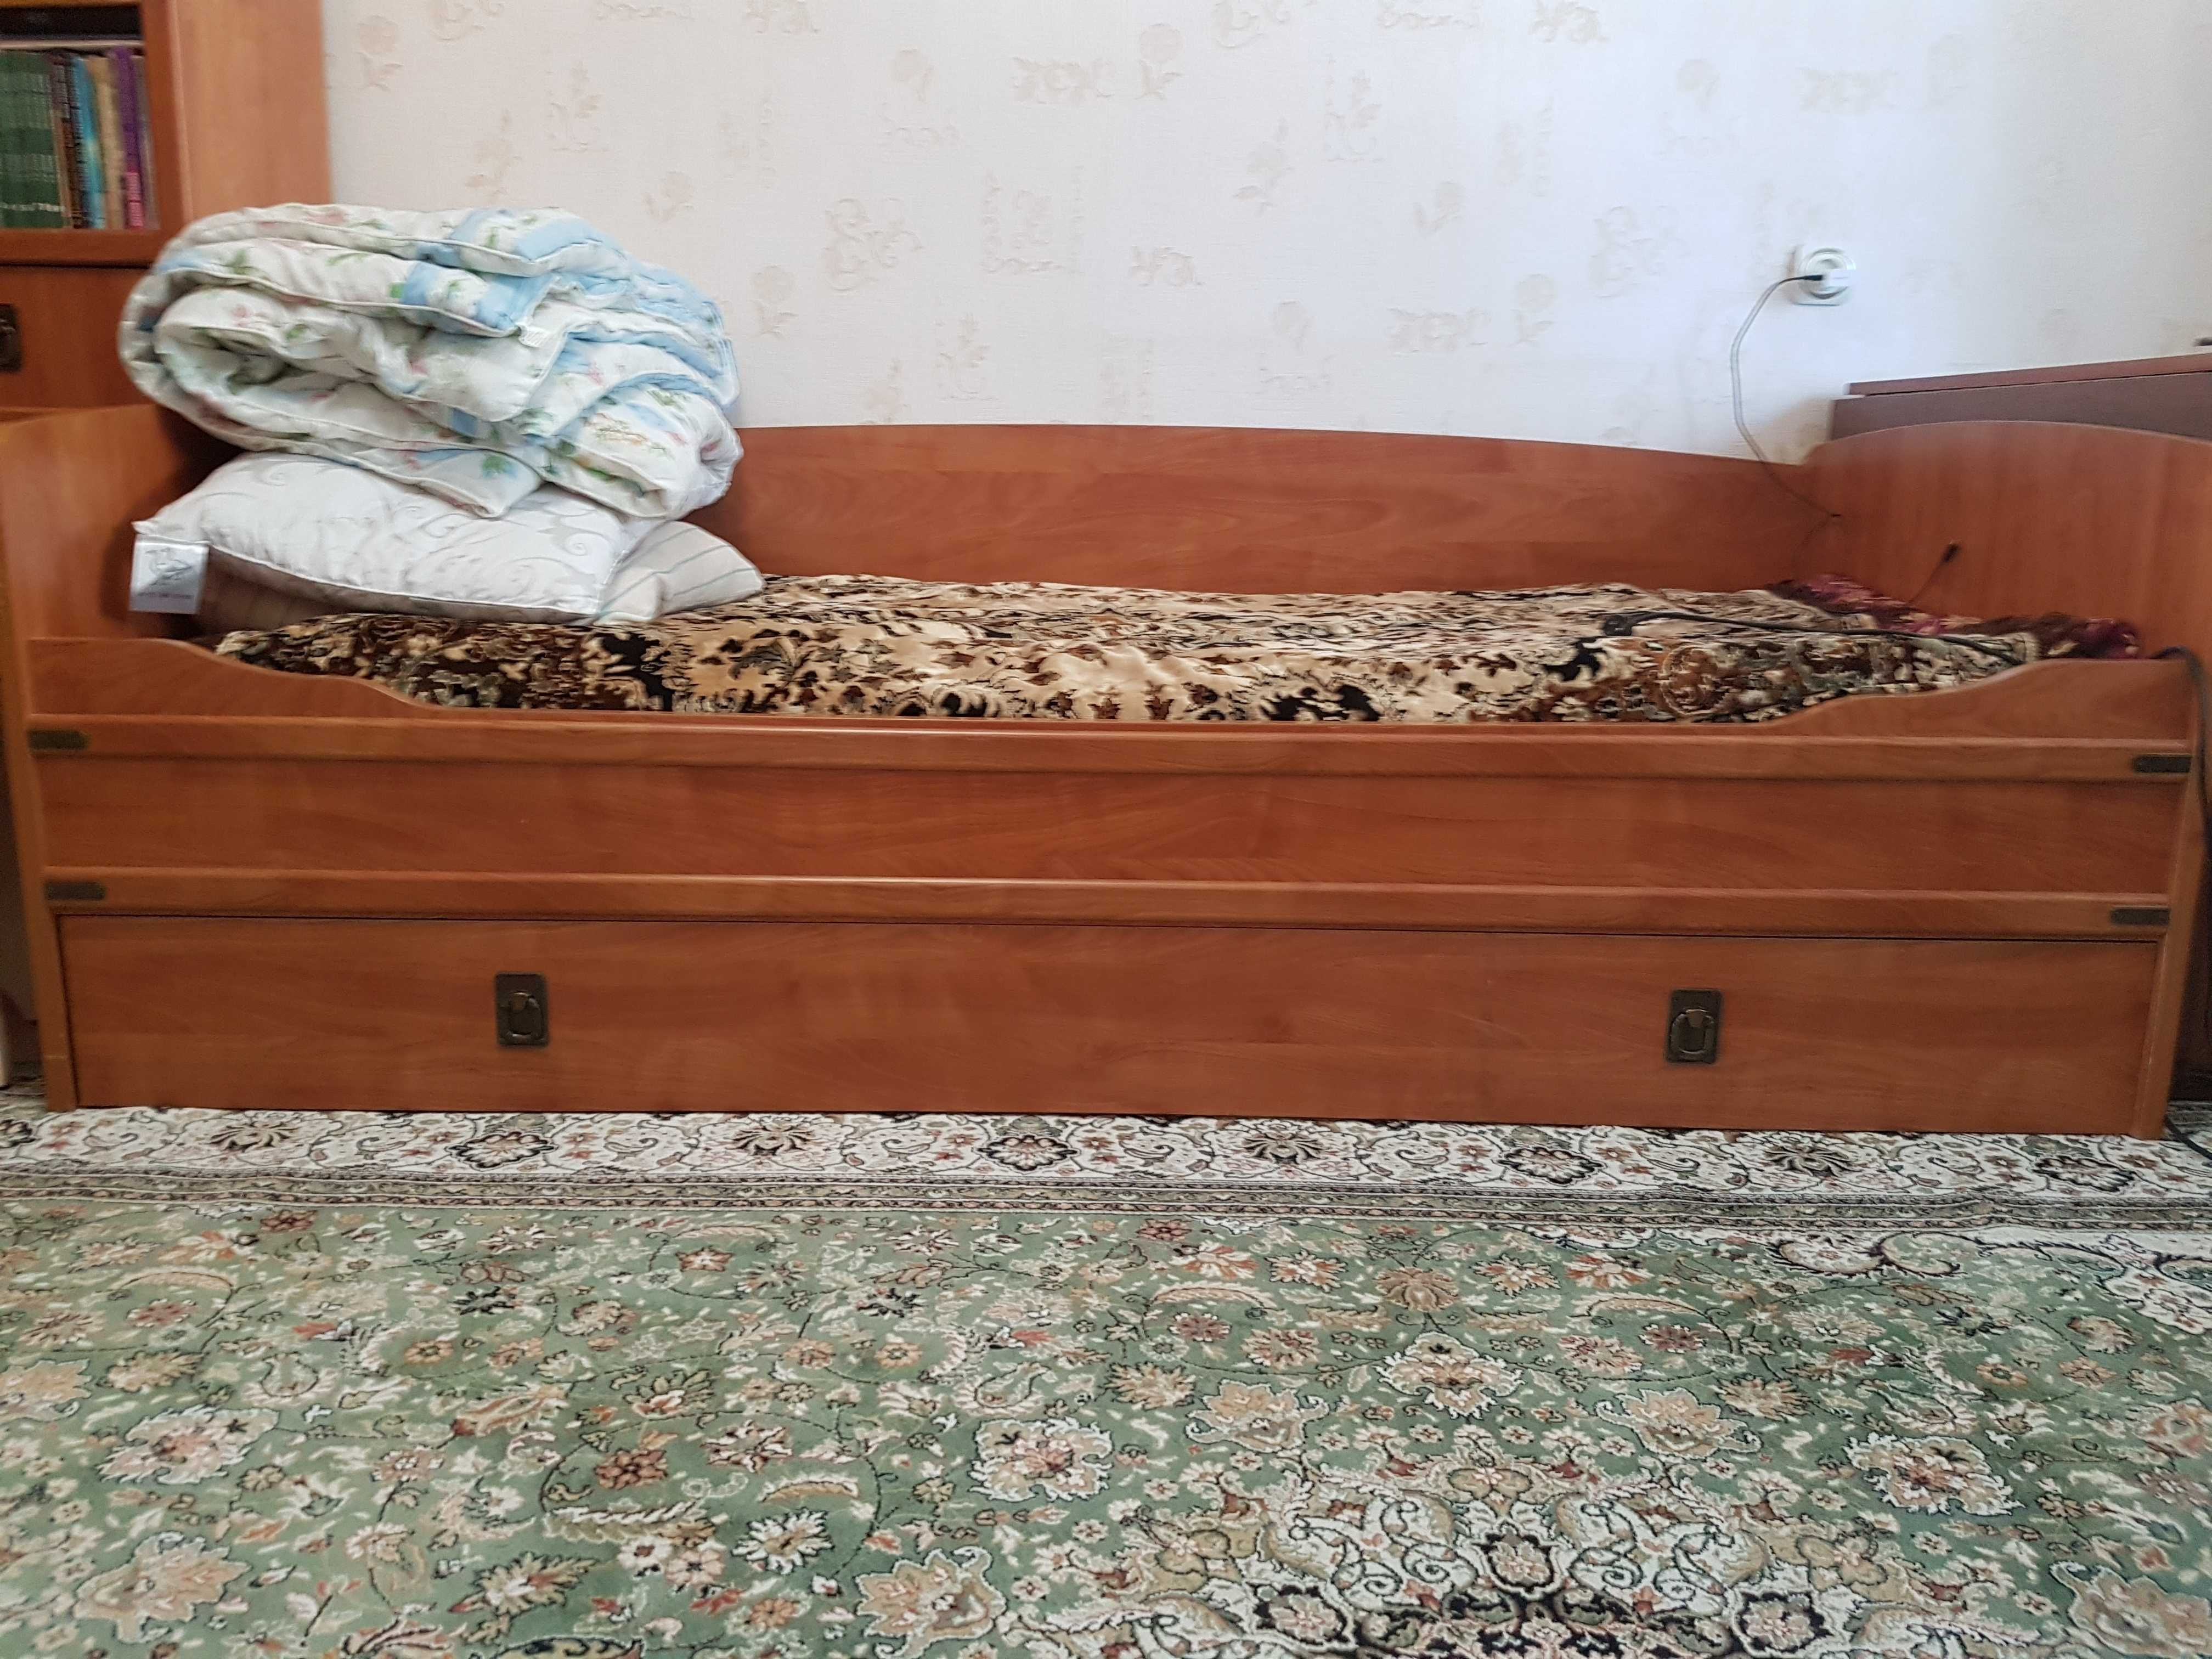 Мебель спальная гарнитура(детская)производство.Украина за 100 000тг.